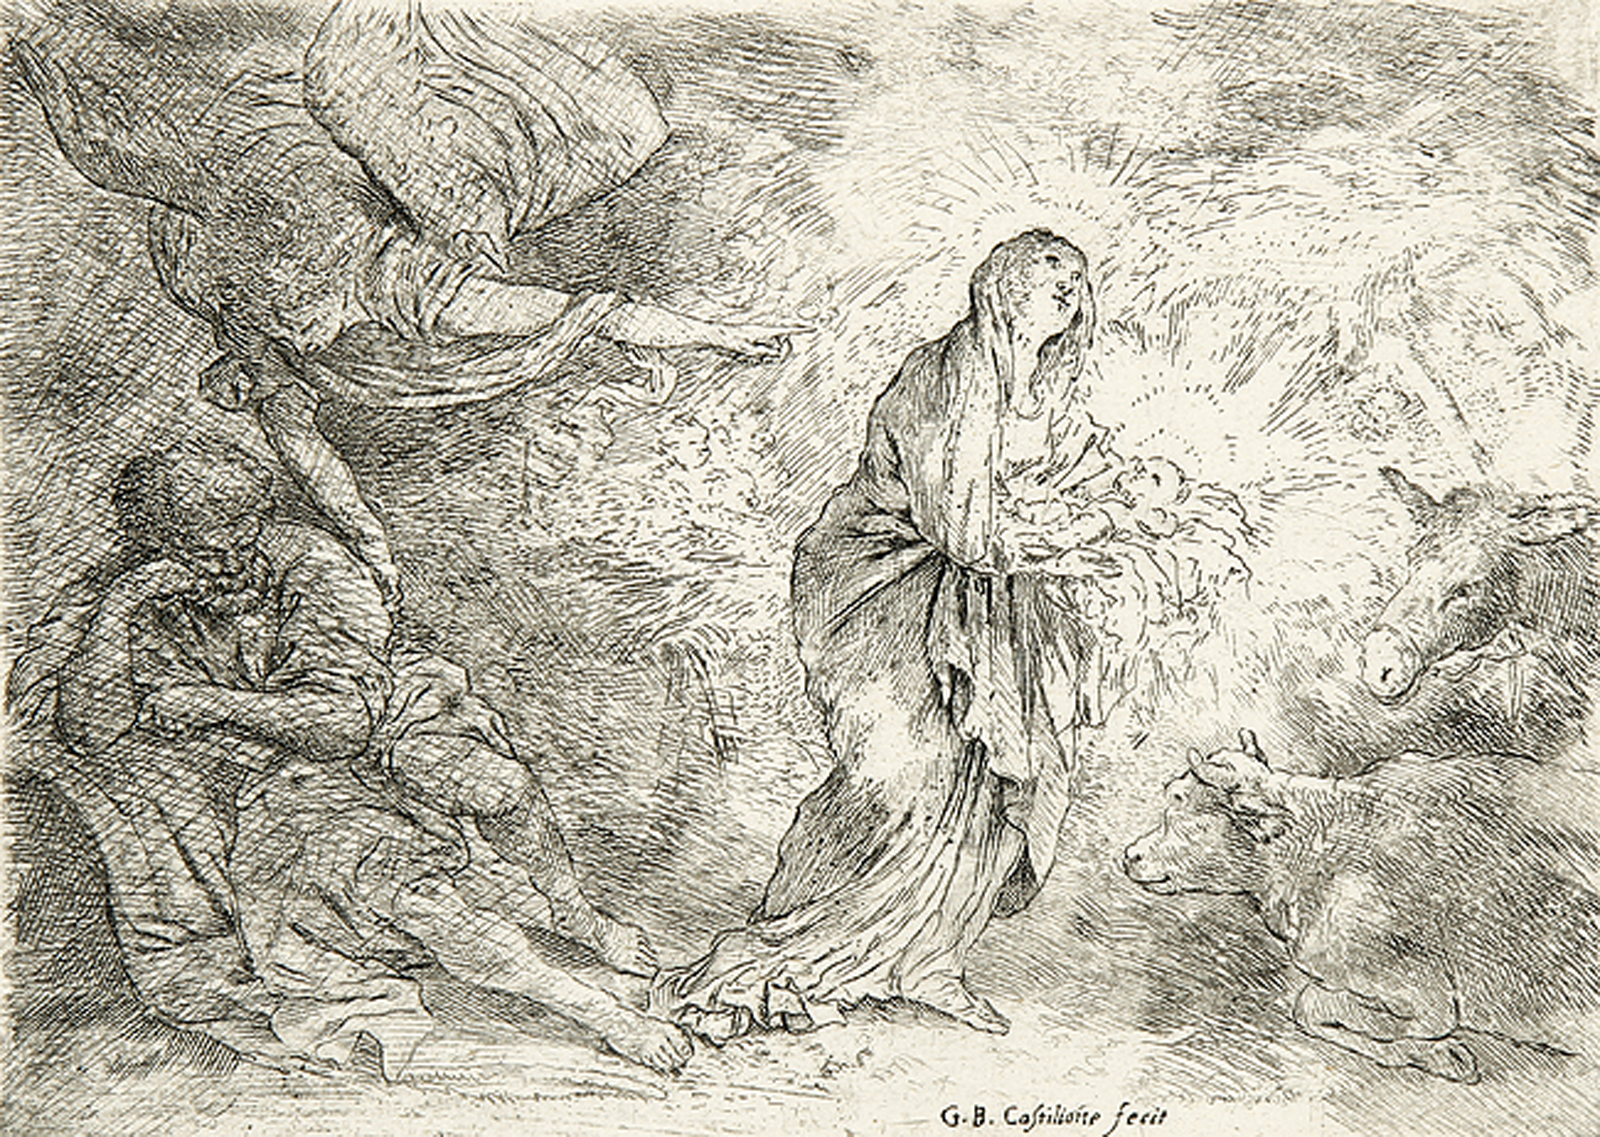 Der Engel weckt Joseph aus seinem Traum.